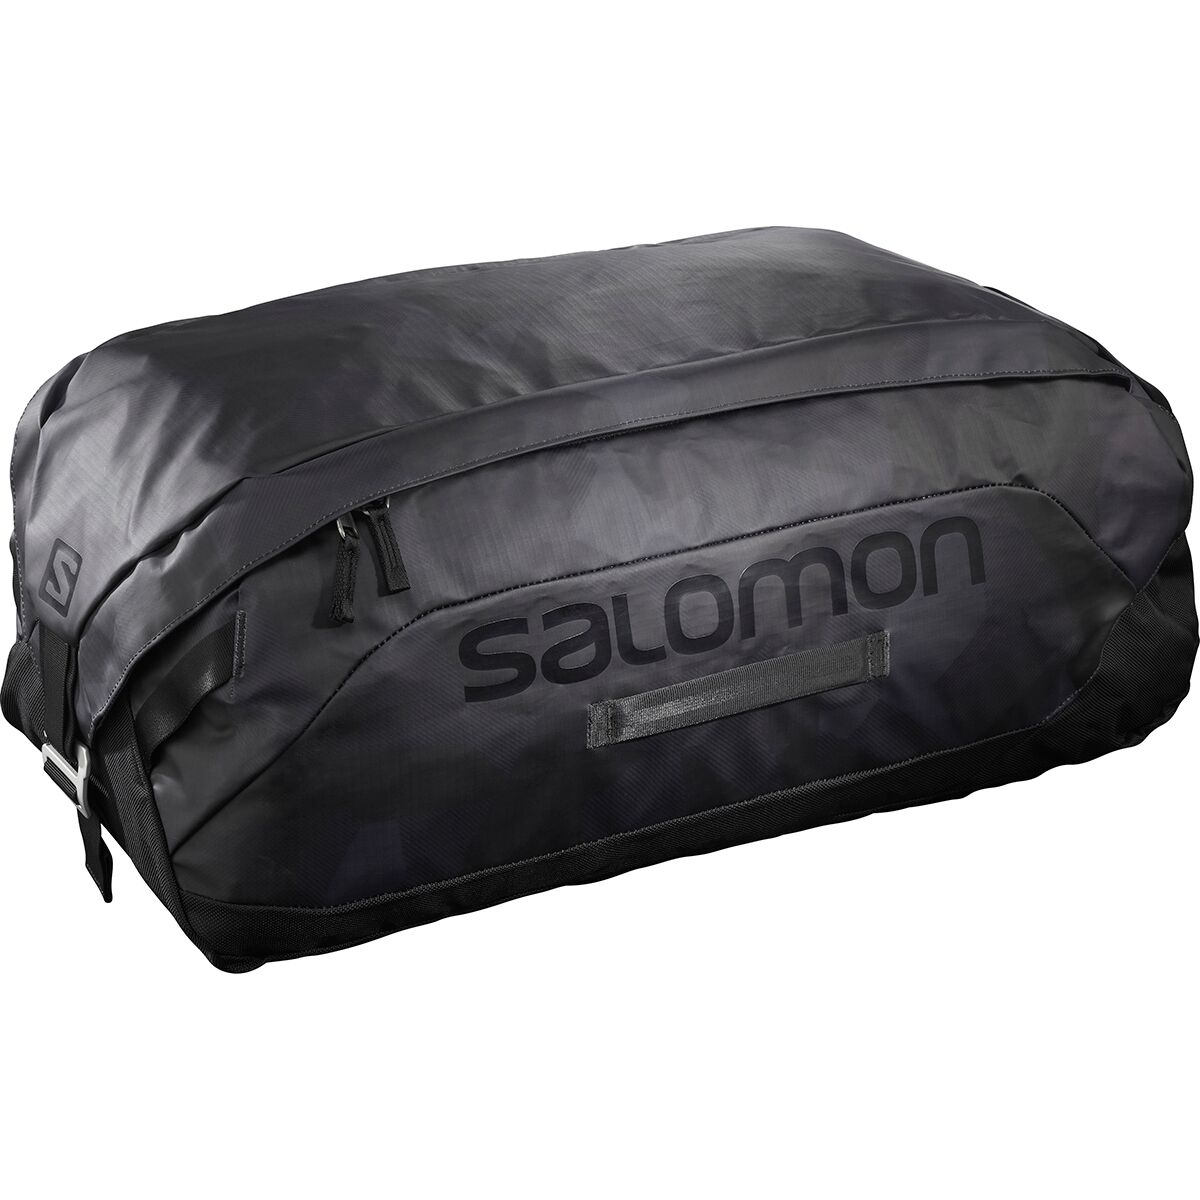 Salomon Outlife 45L Duffel Bag